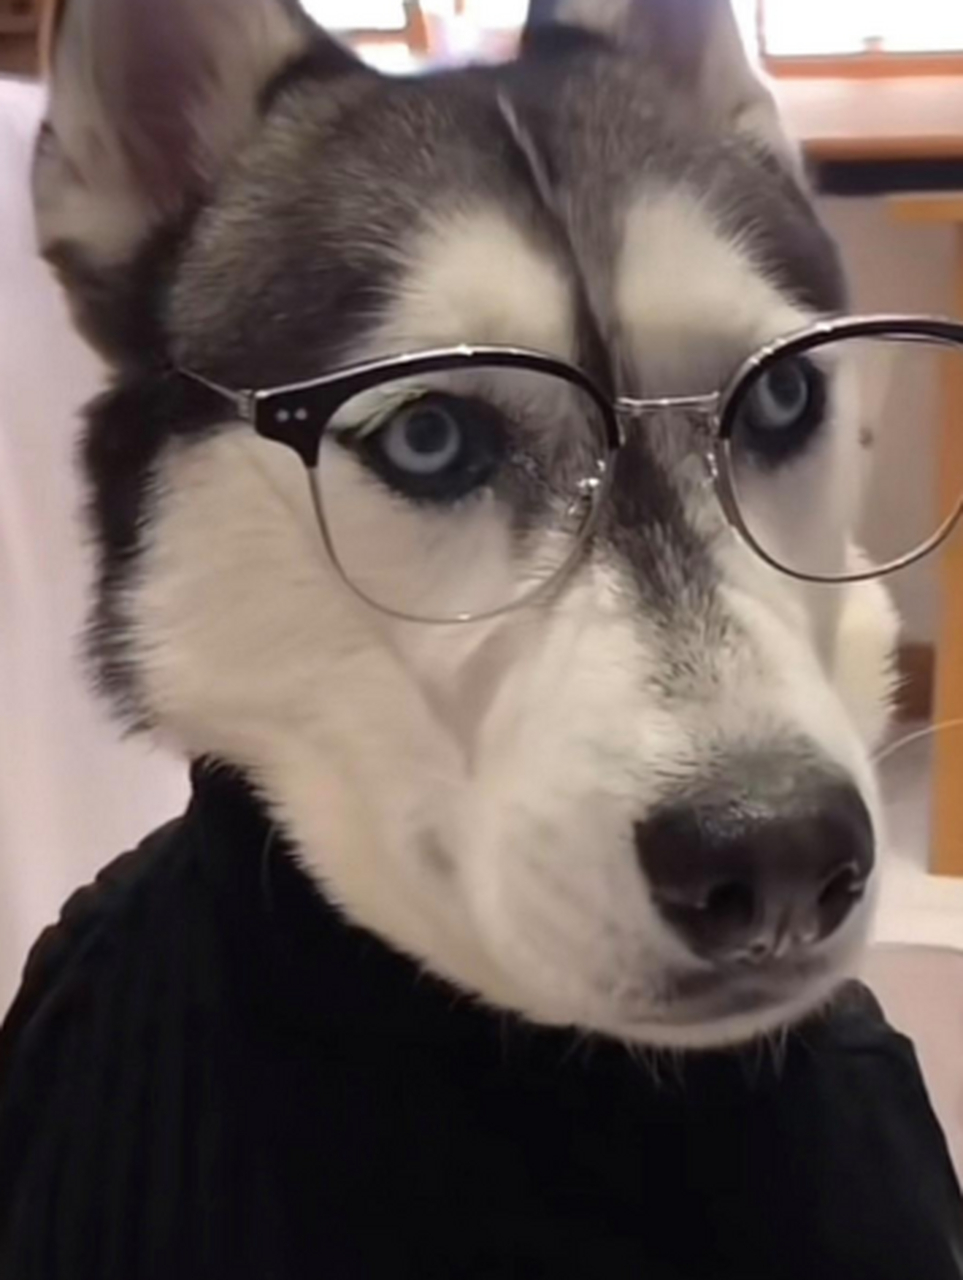 戴眼镜的哈士奇帅不哈哈哈 网友:突然觉得狗都比我俊